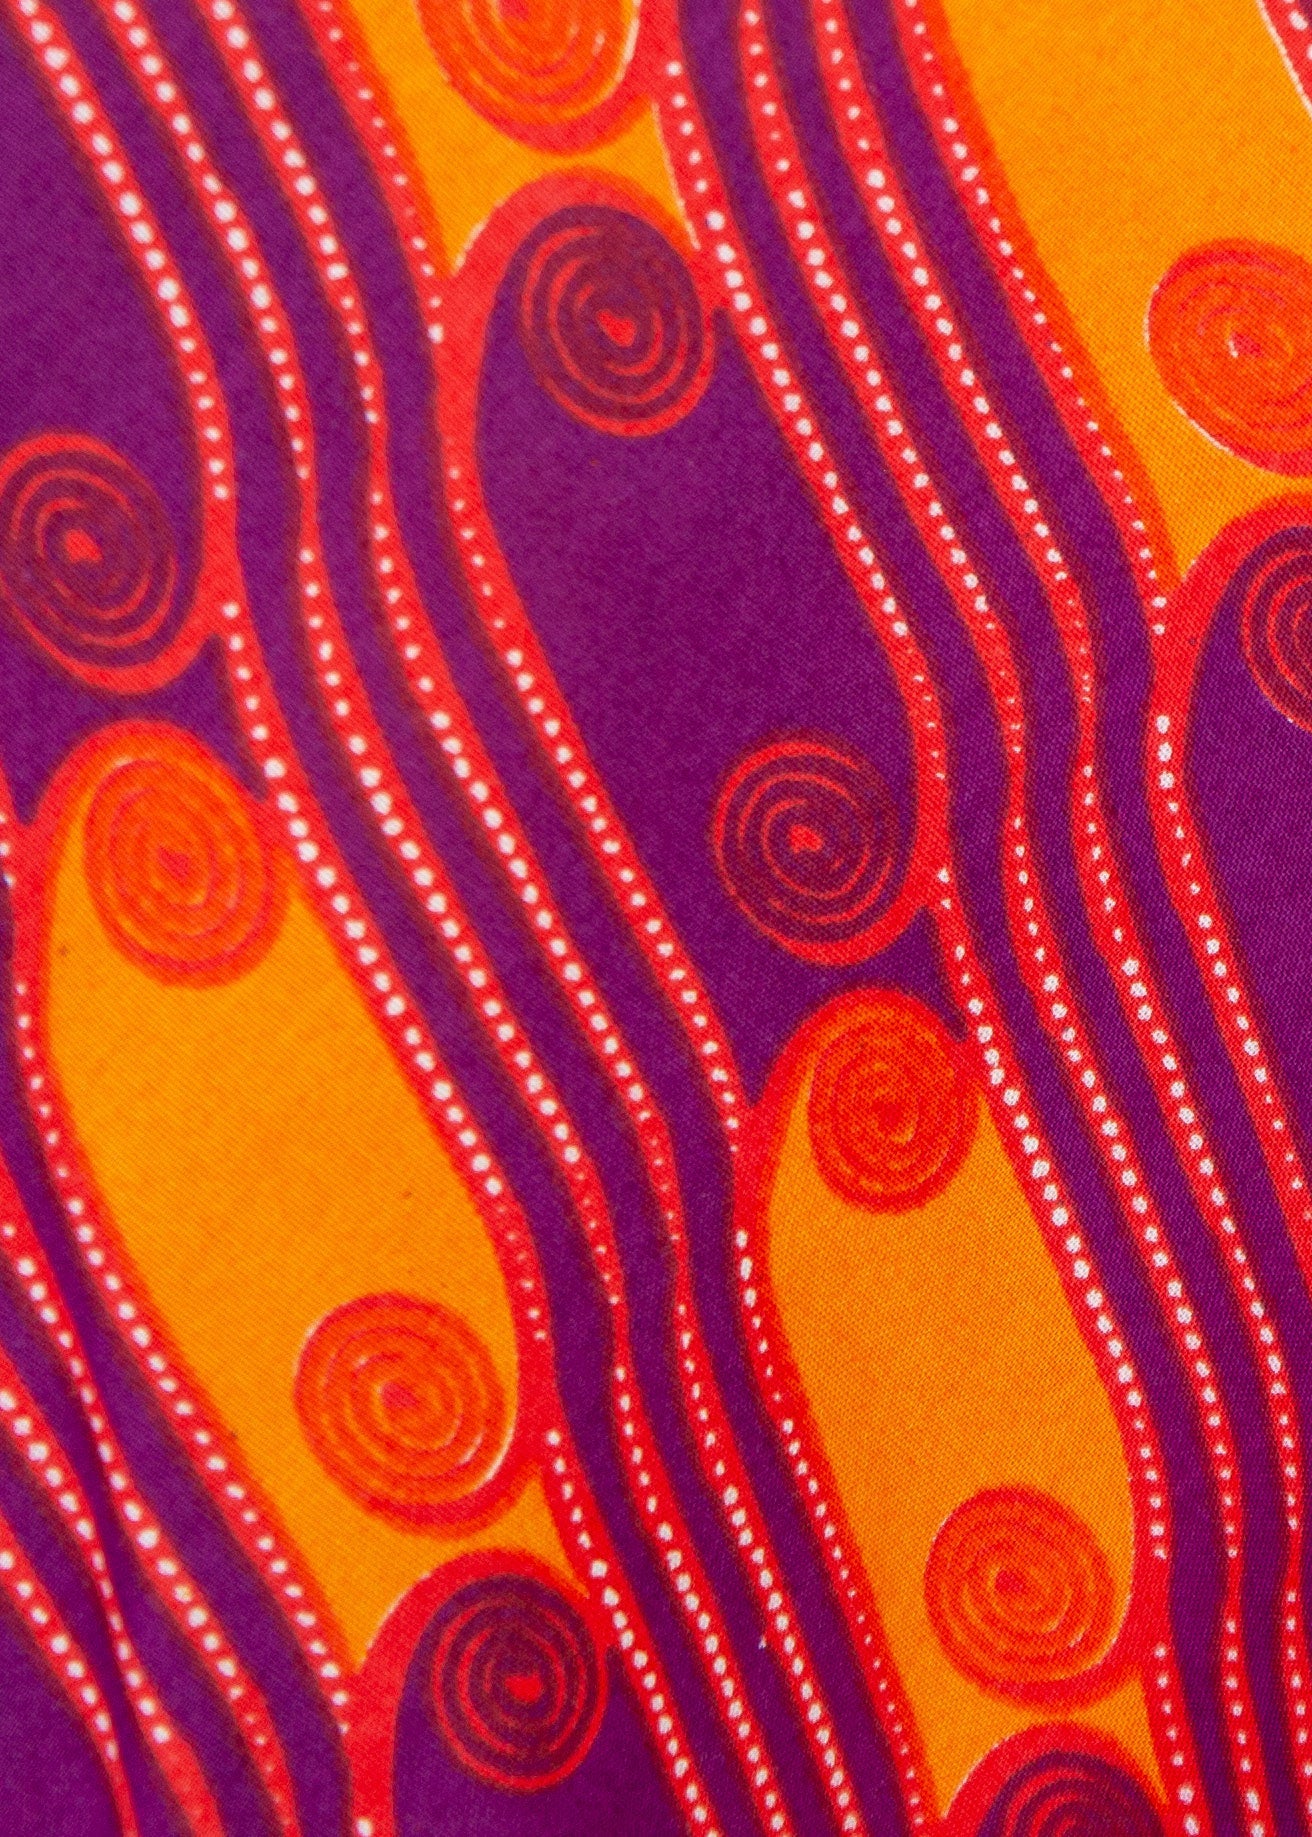 Orange and purple swirl dress